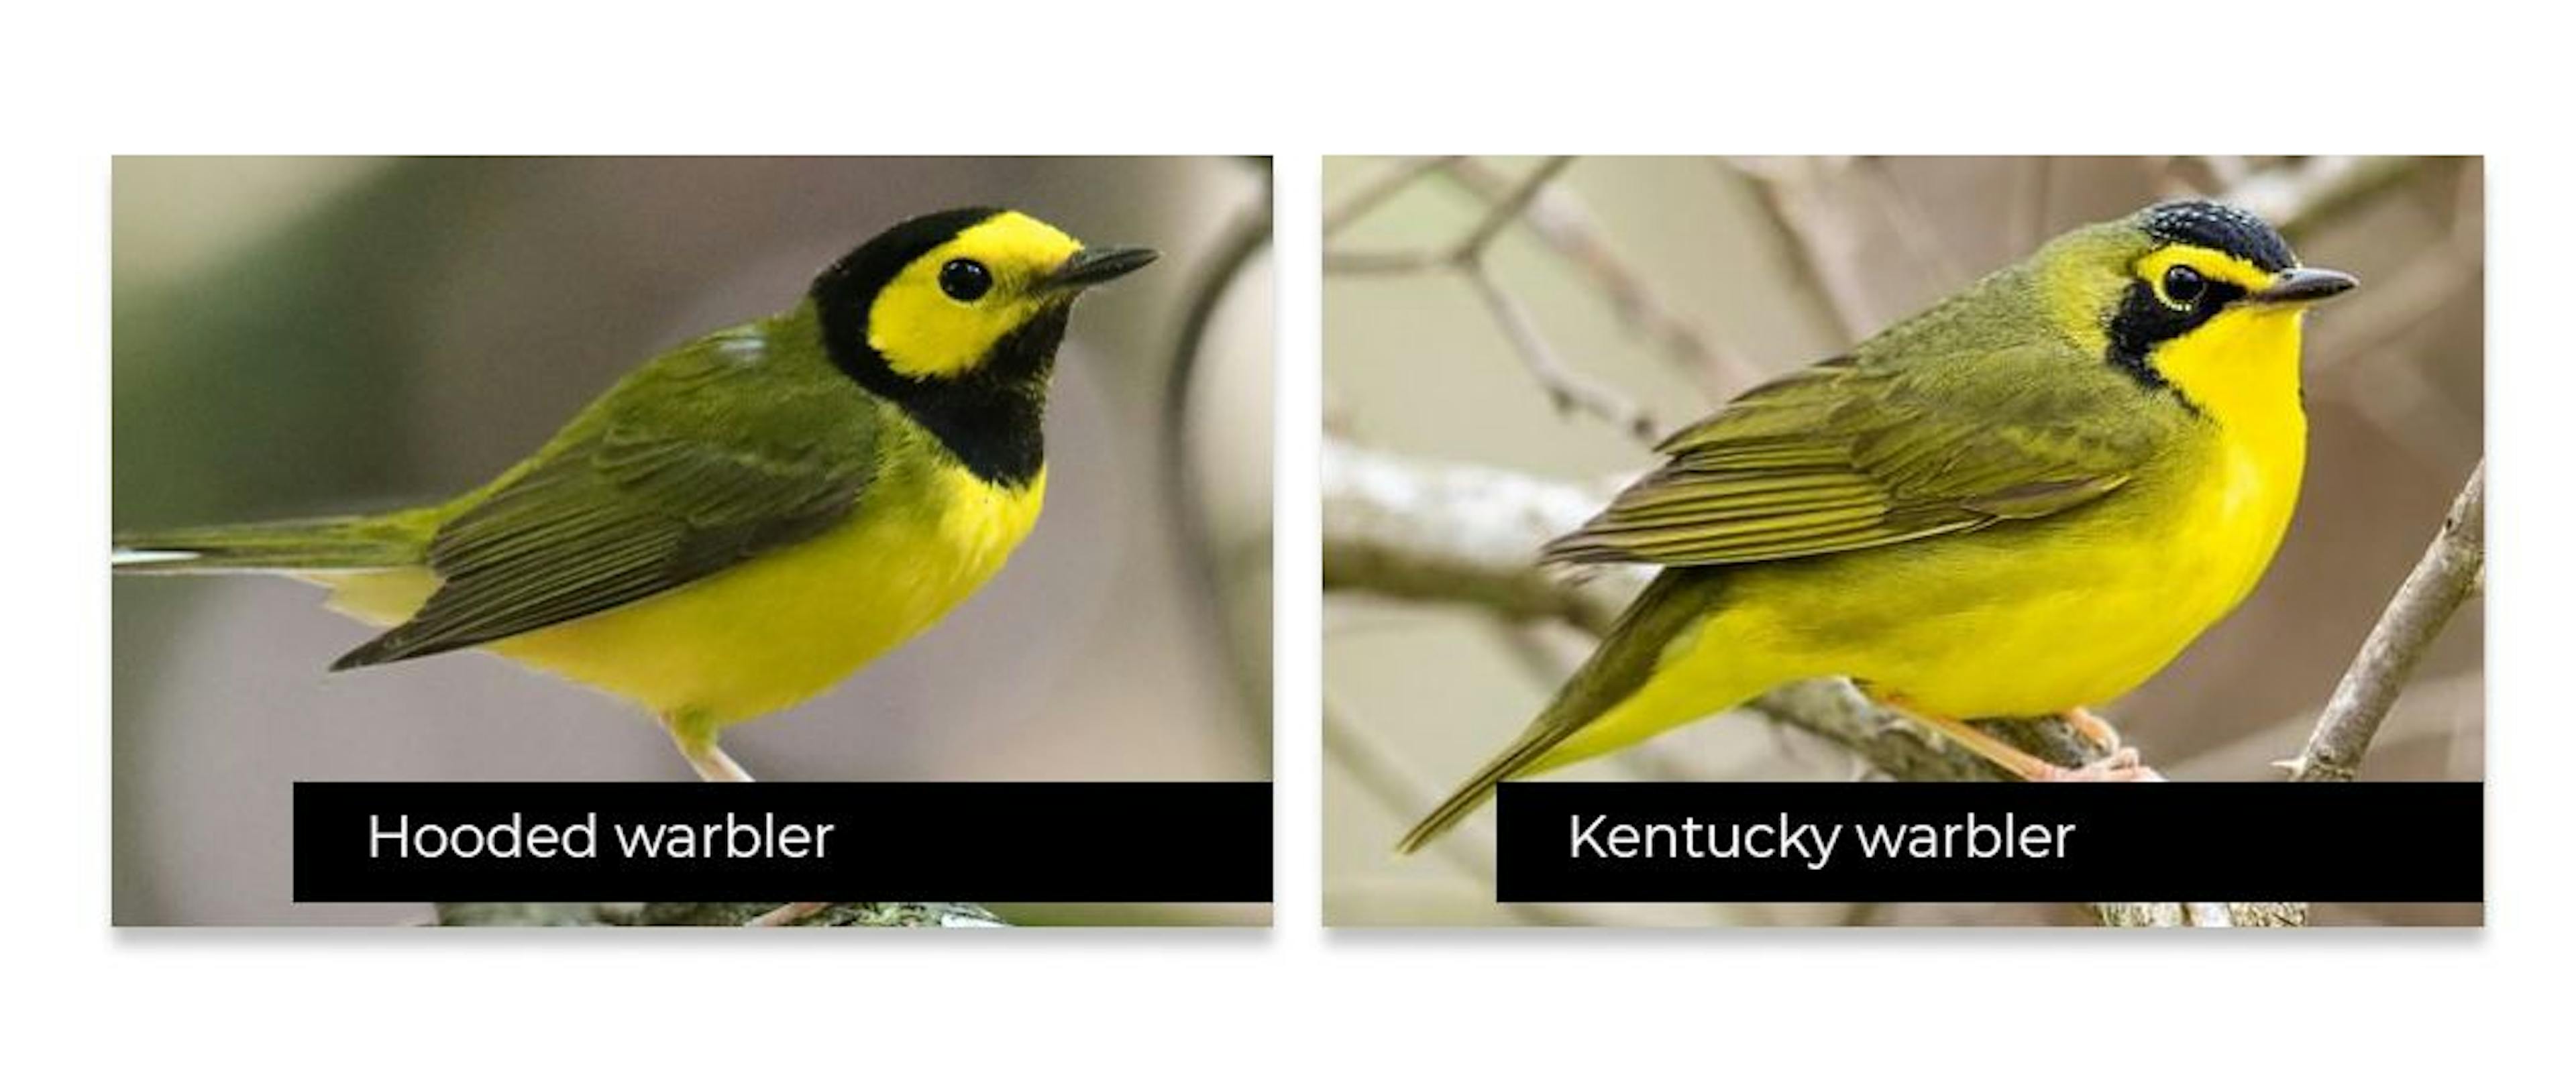 Certains oiseaux se ressemblent beaucoup, ce qui rend difficile leur détection précise.